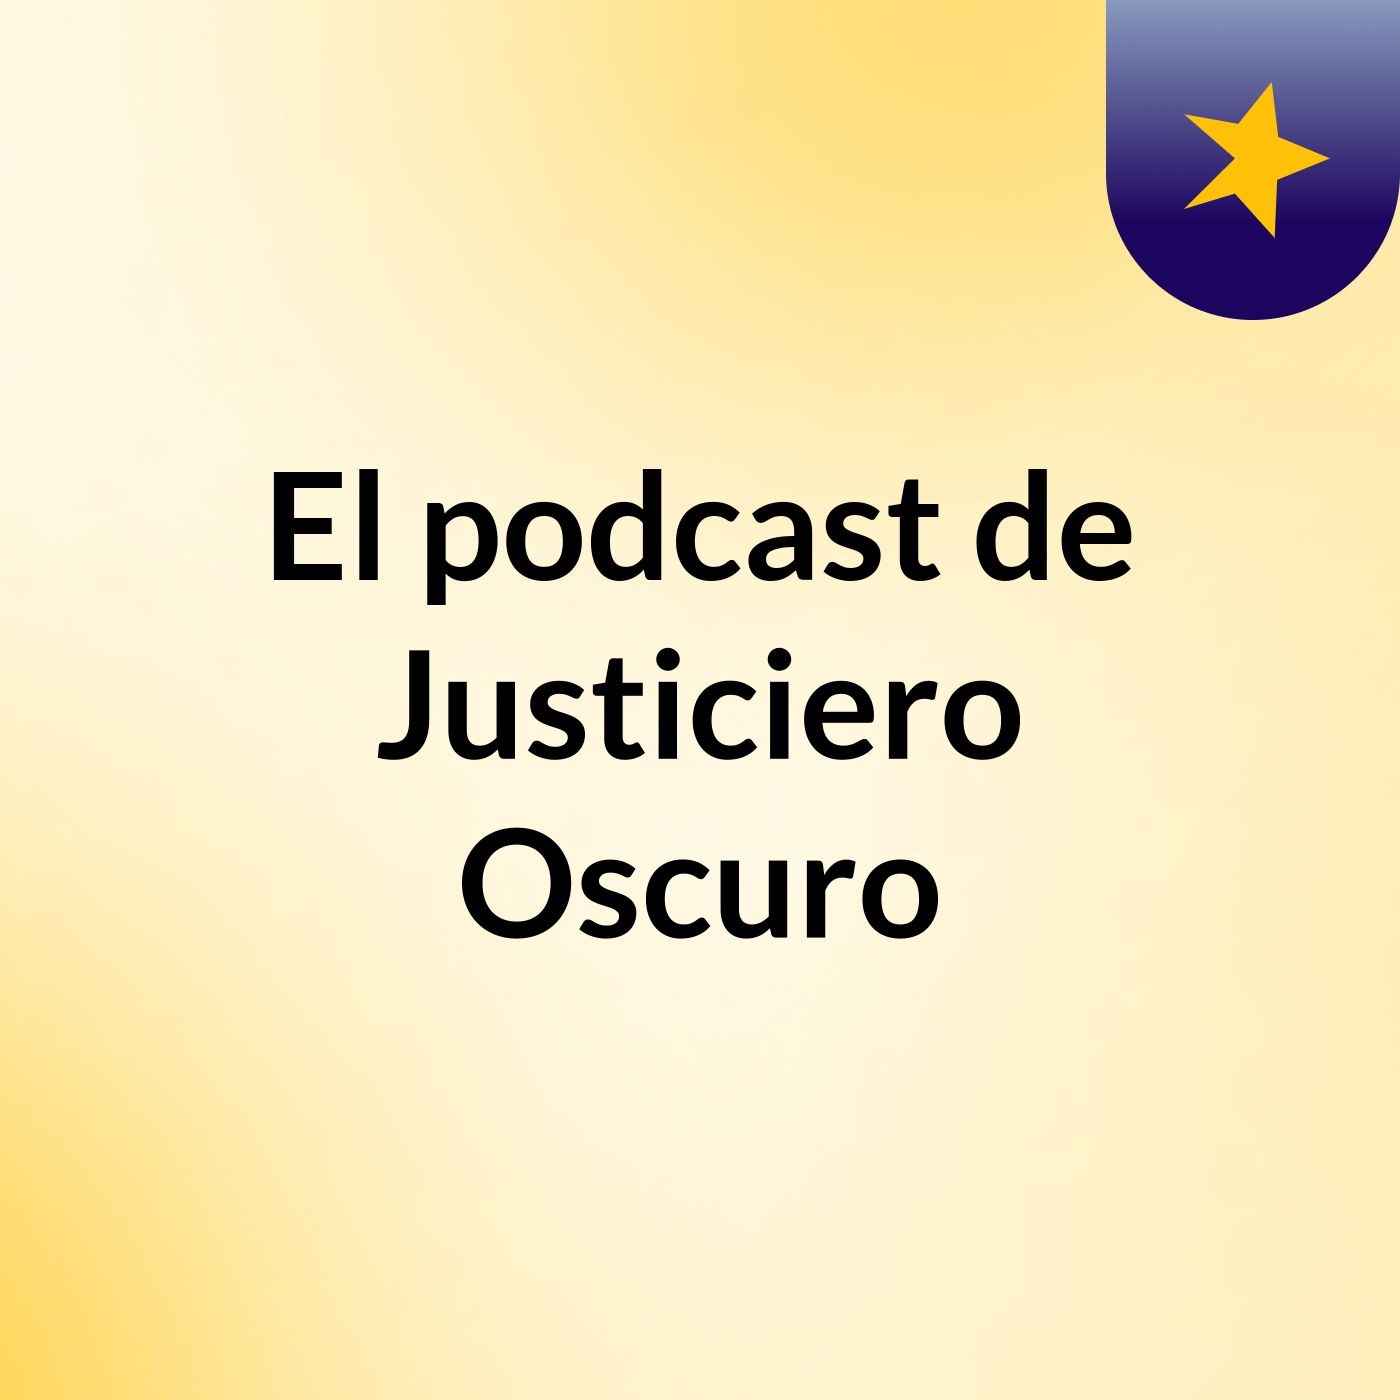 El podcast de Justiciero Oscuro